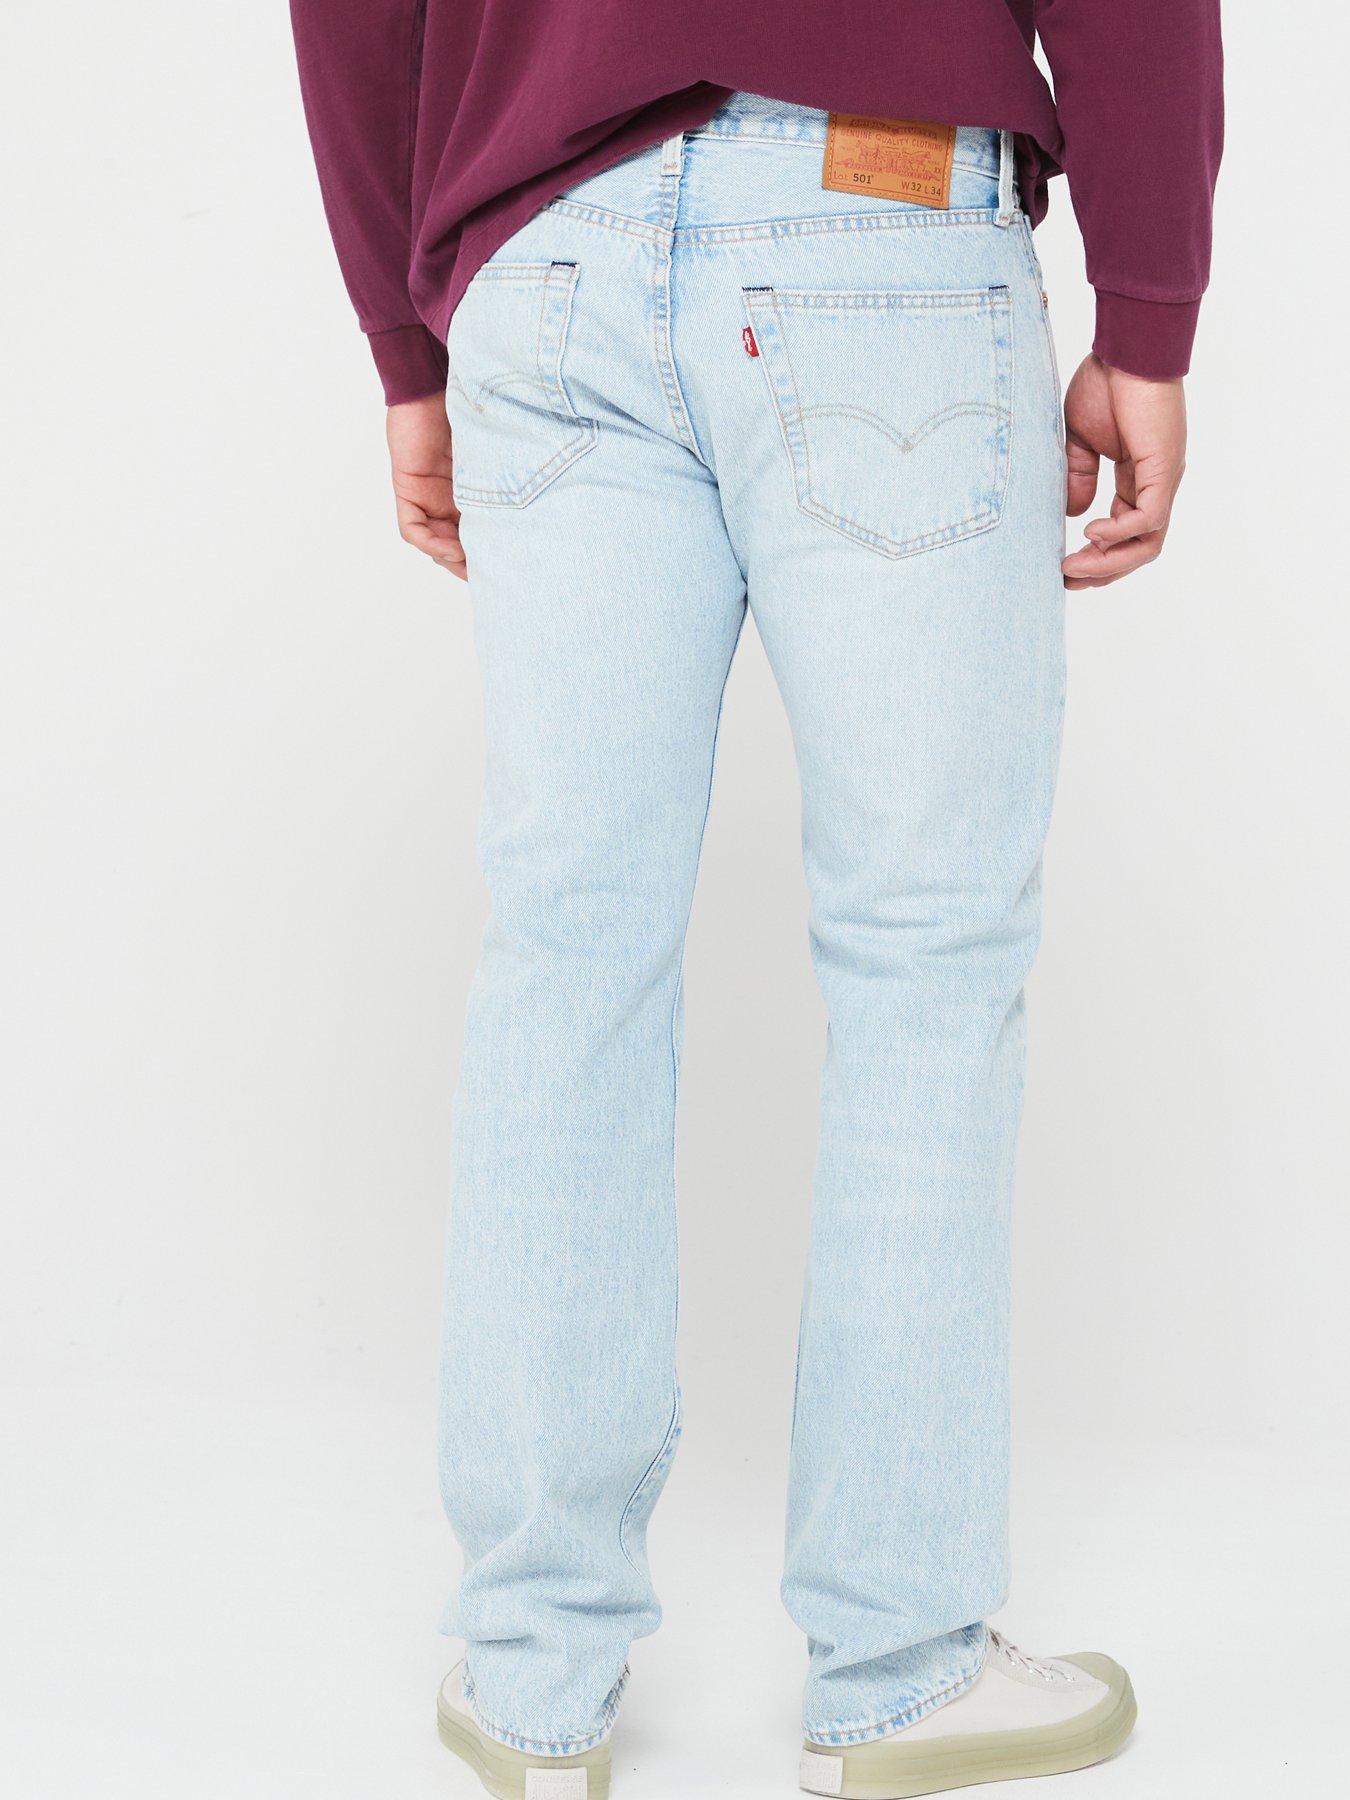 Levi's Levi's 501???? Original Straight Fit Jeans - Drive Me Crazier ...